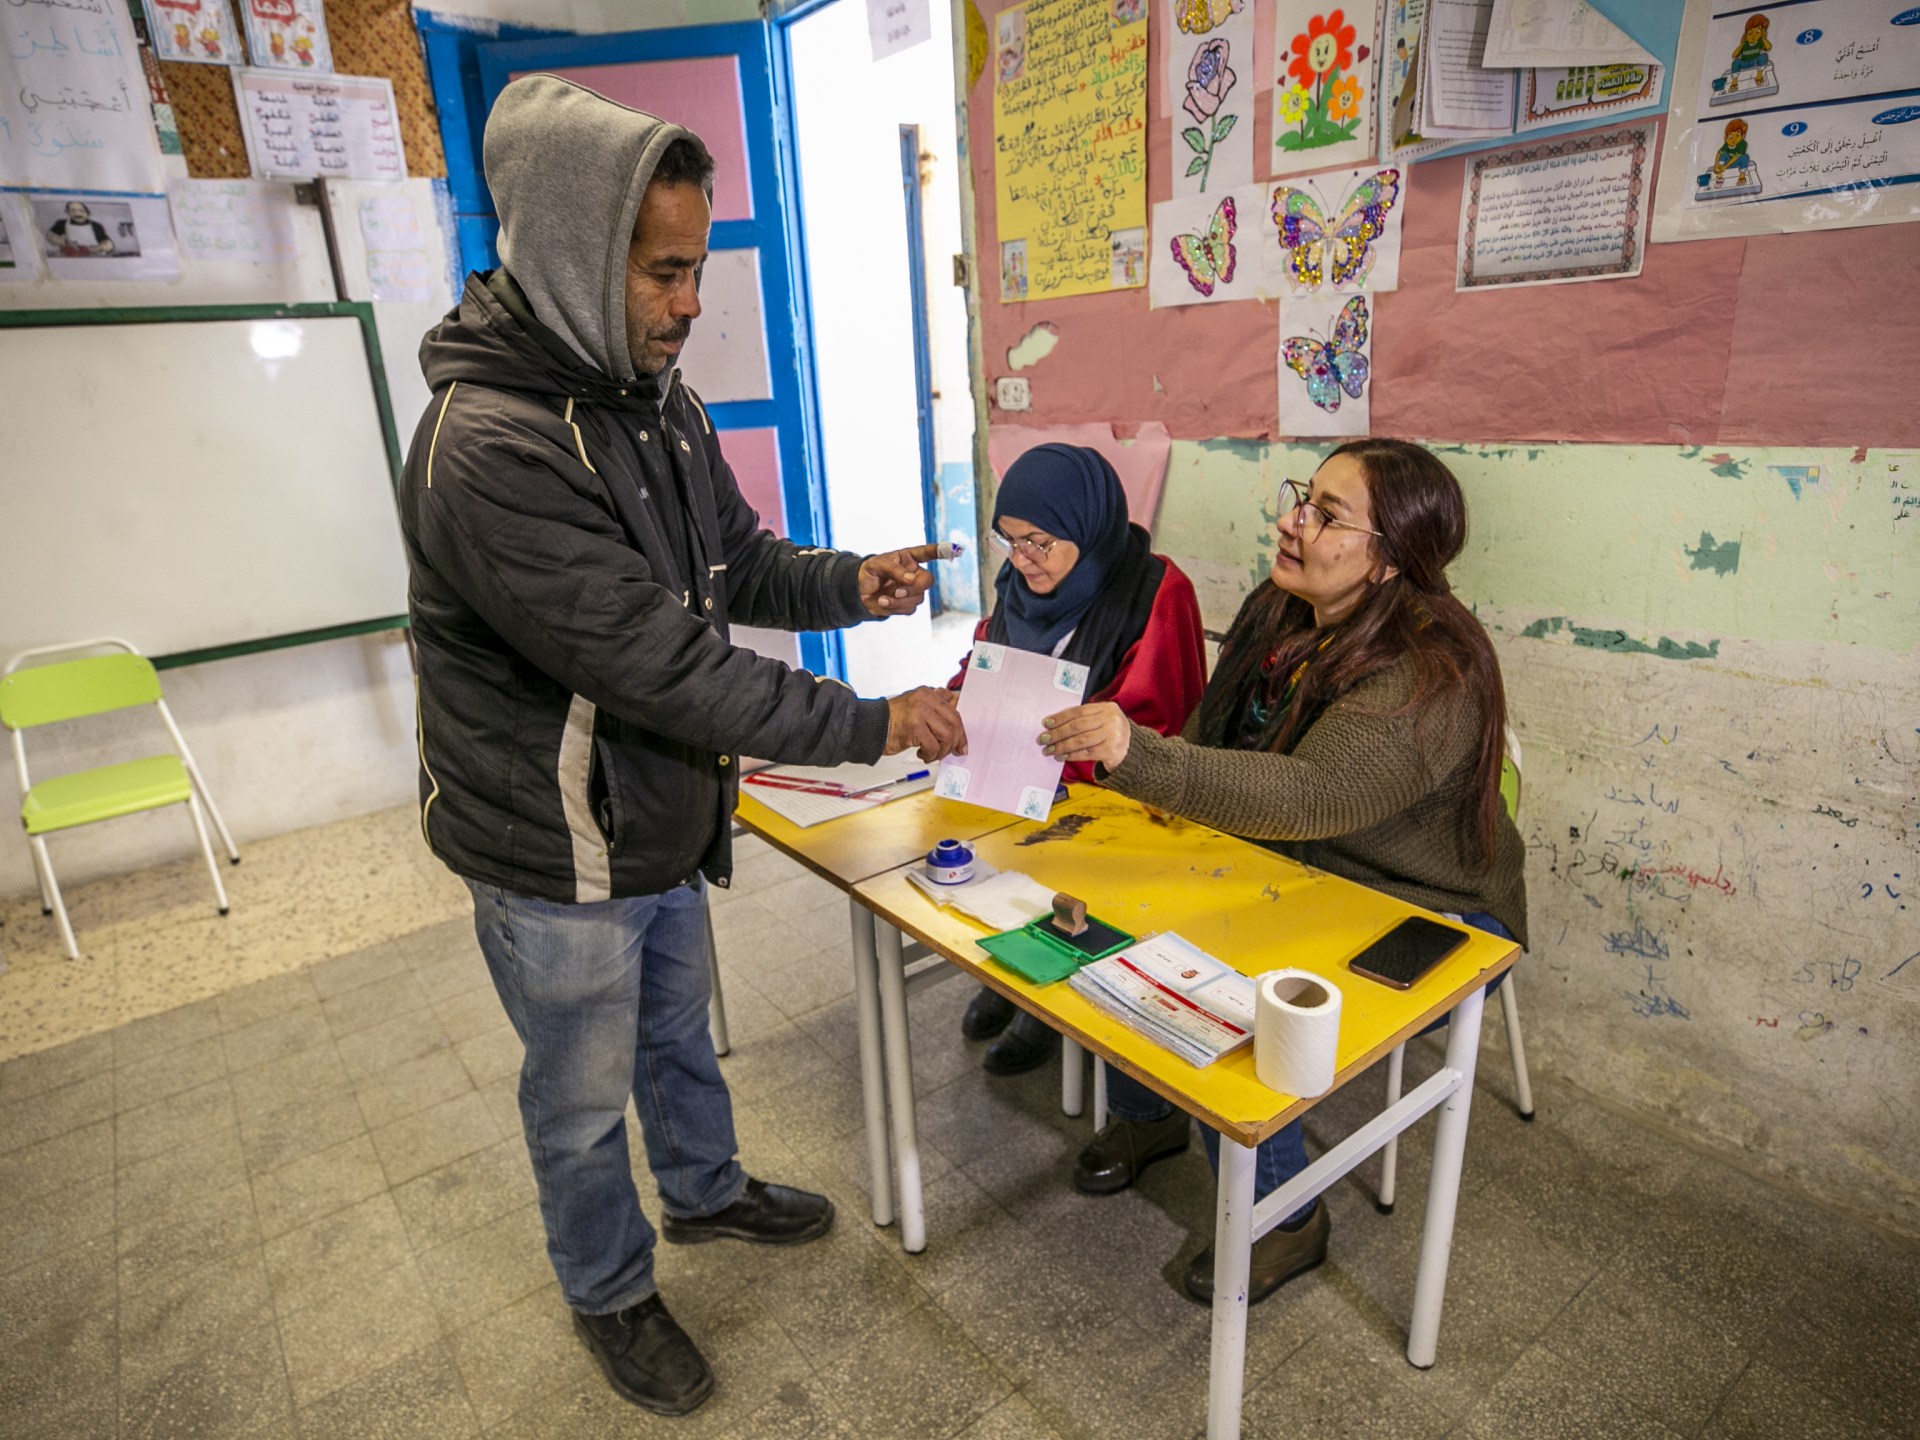 انتهاء الجولة الثانية من انتخابات تونس المحلية ونسبة المشاركة 12.44% | أخبار – البوكس نيوز